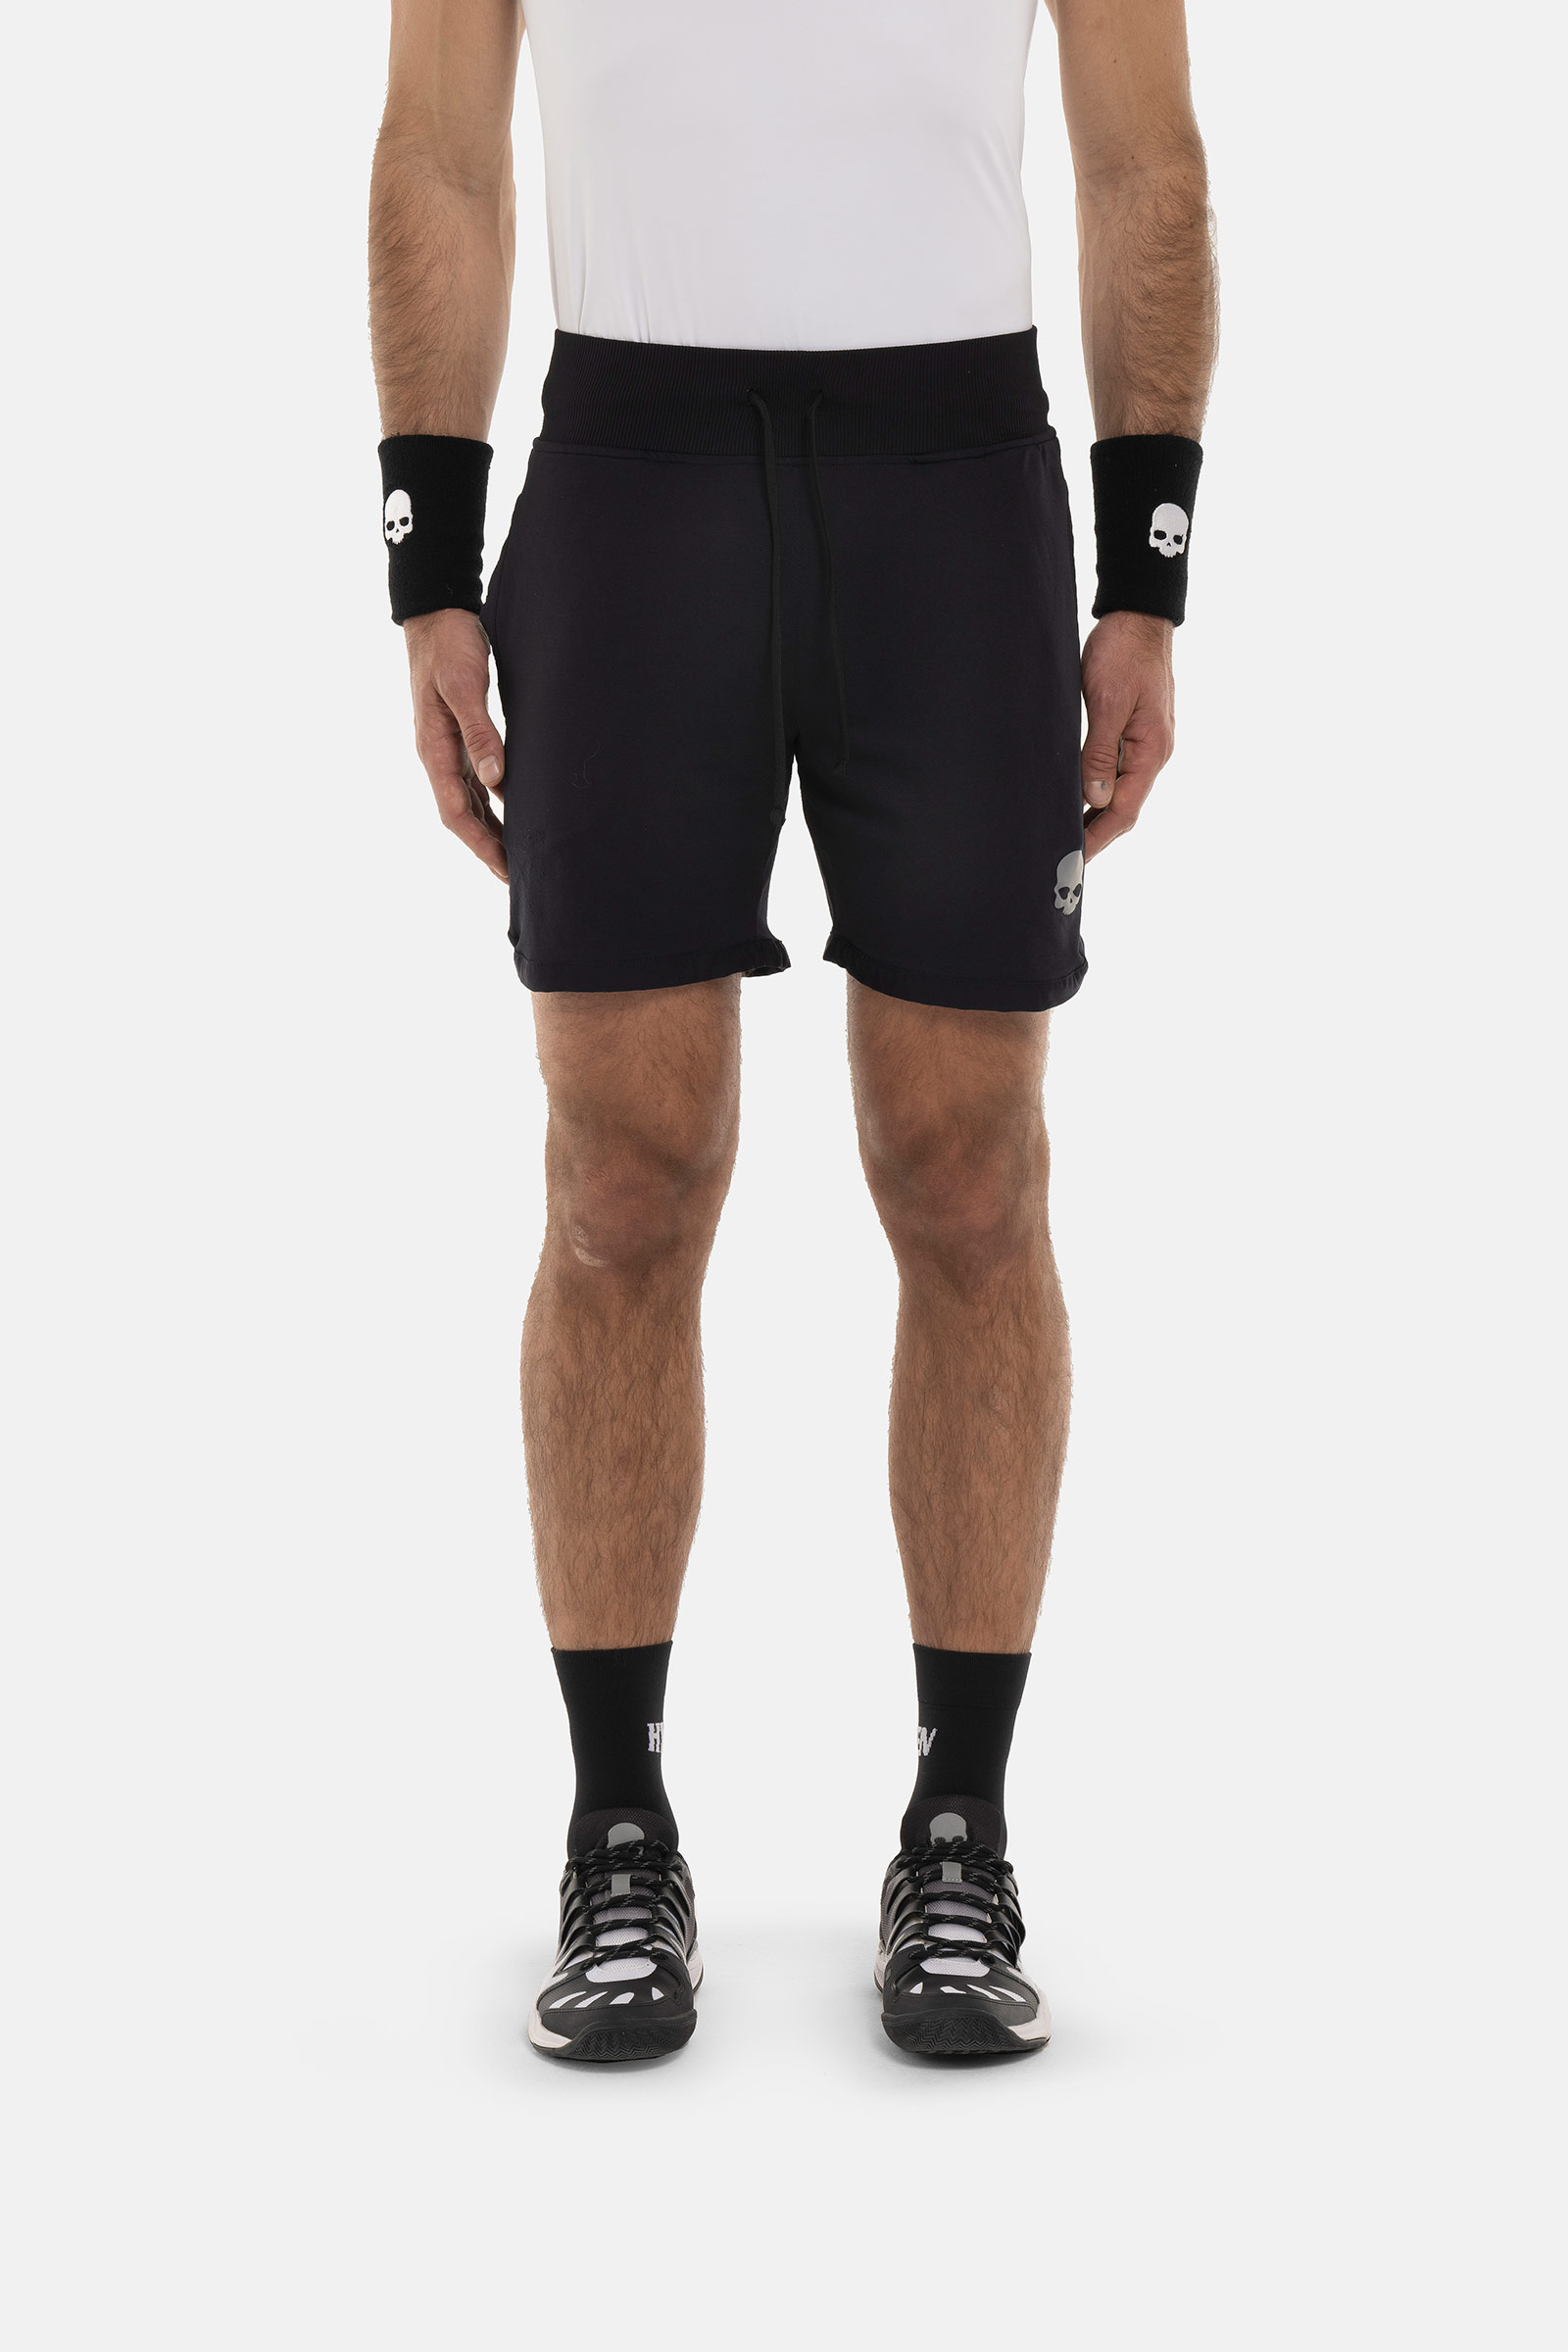 TECH SHORTS - BLACK - Abbigliamento sportivo | Hydrogen